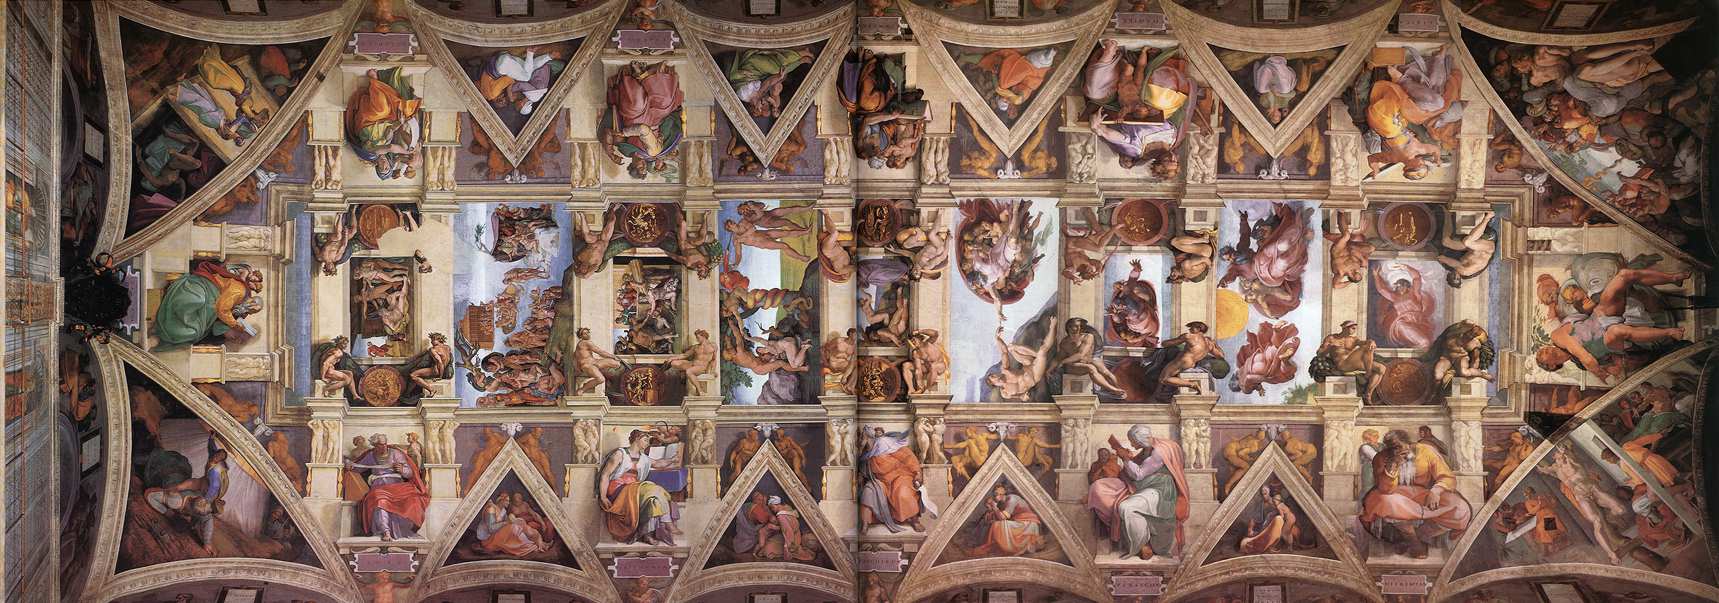 Cикстинская капелла Микеланджело в Ватикане